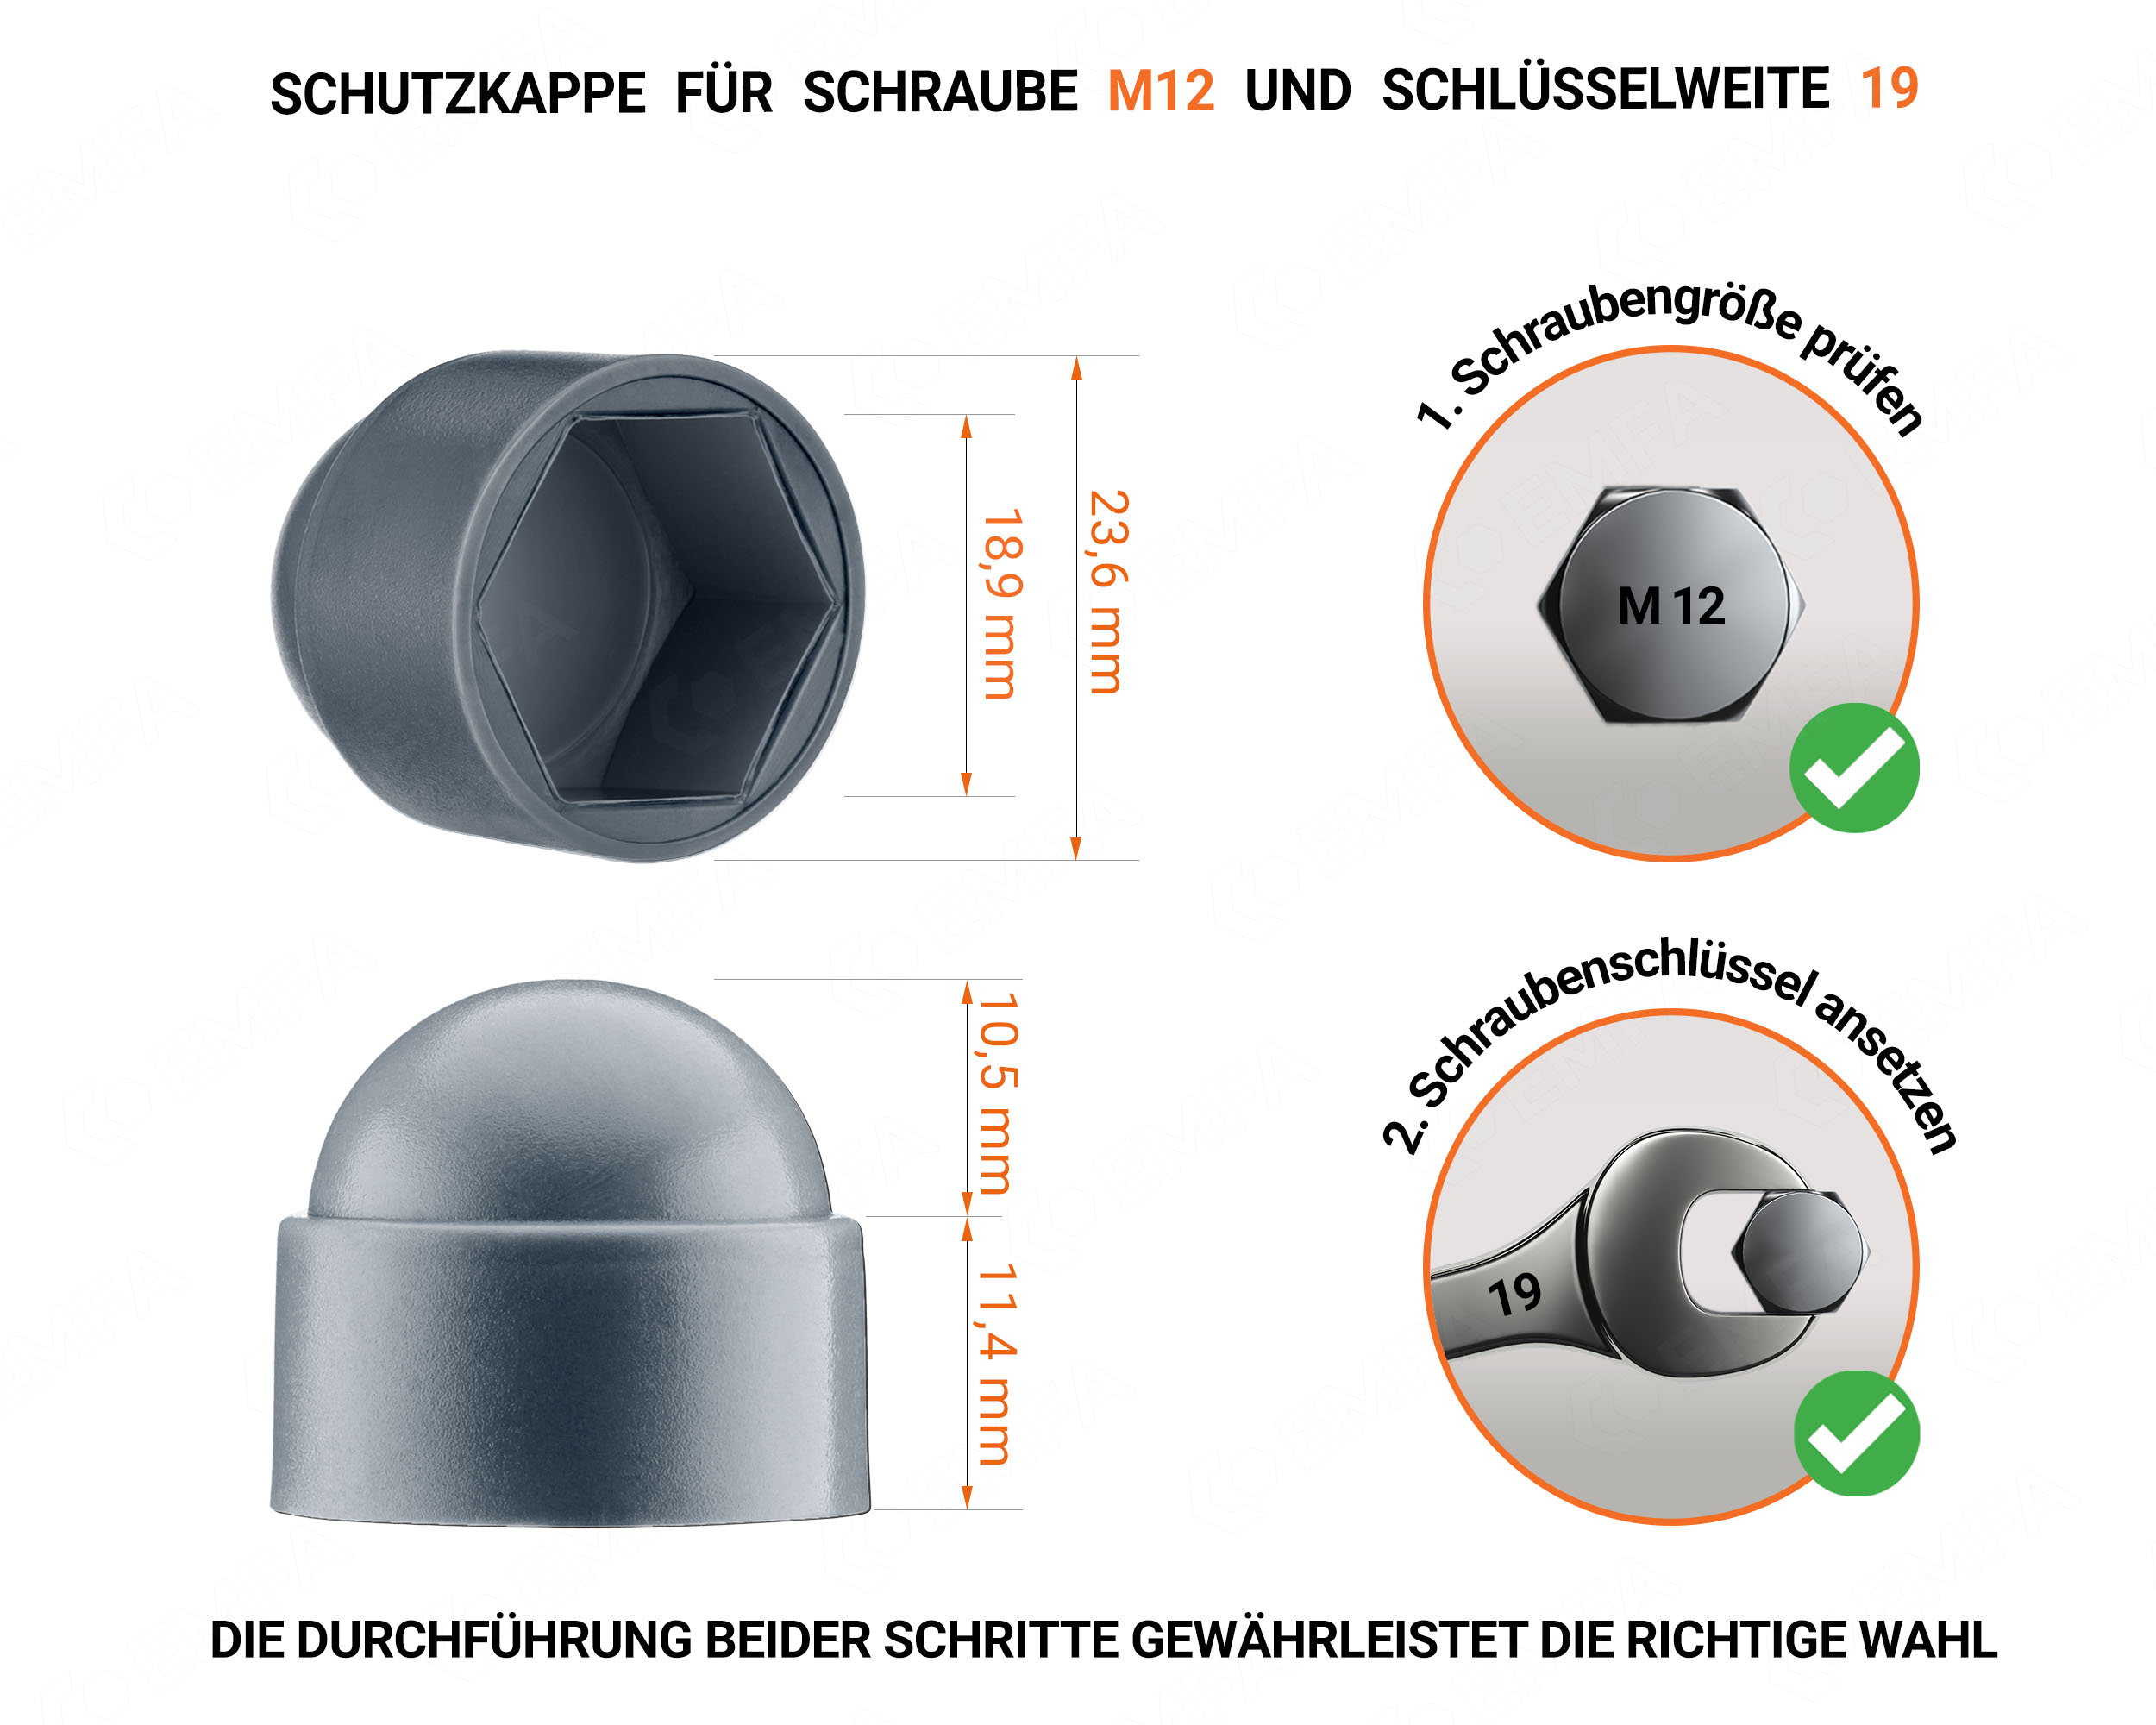 Anthrazite Schutzkappen für Schrauben M12 Schlüsselweite 19 mit technischen Abmessungen und Anleitung für korrekte Messung